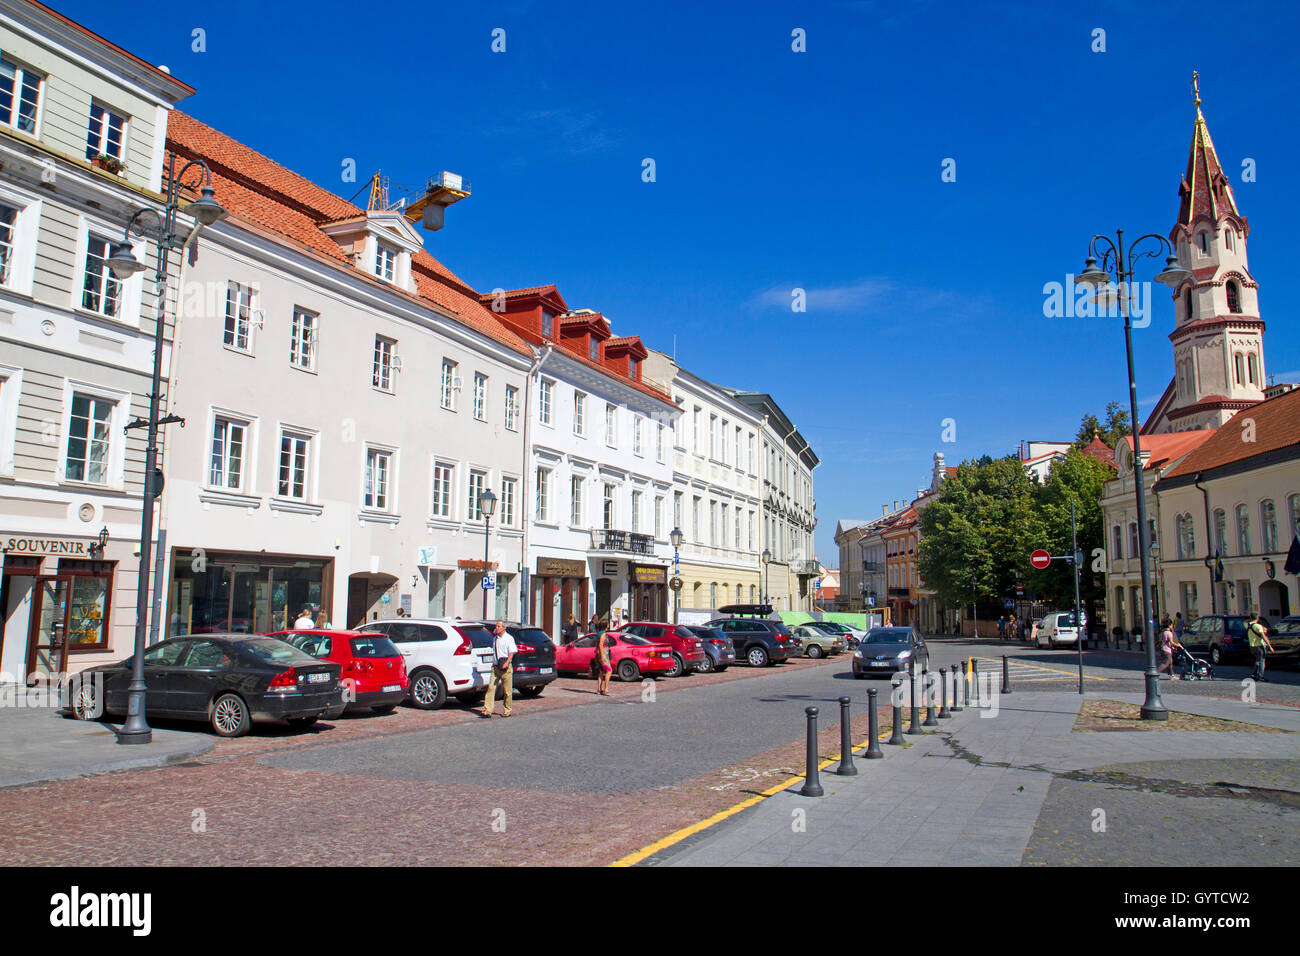 Street scene in the old town of Vilnius Stock Photo